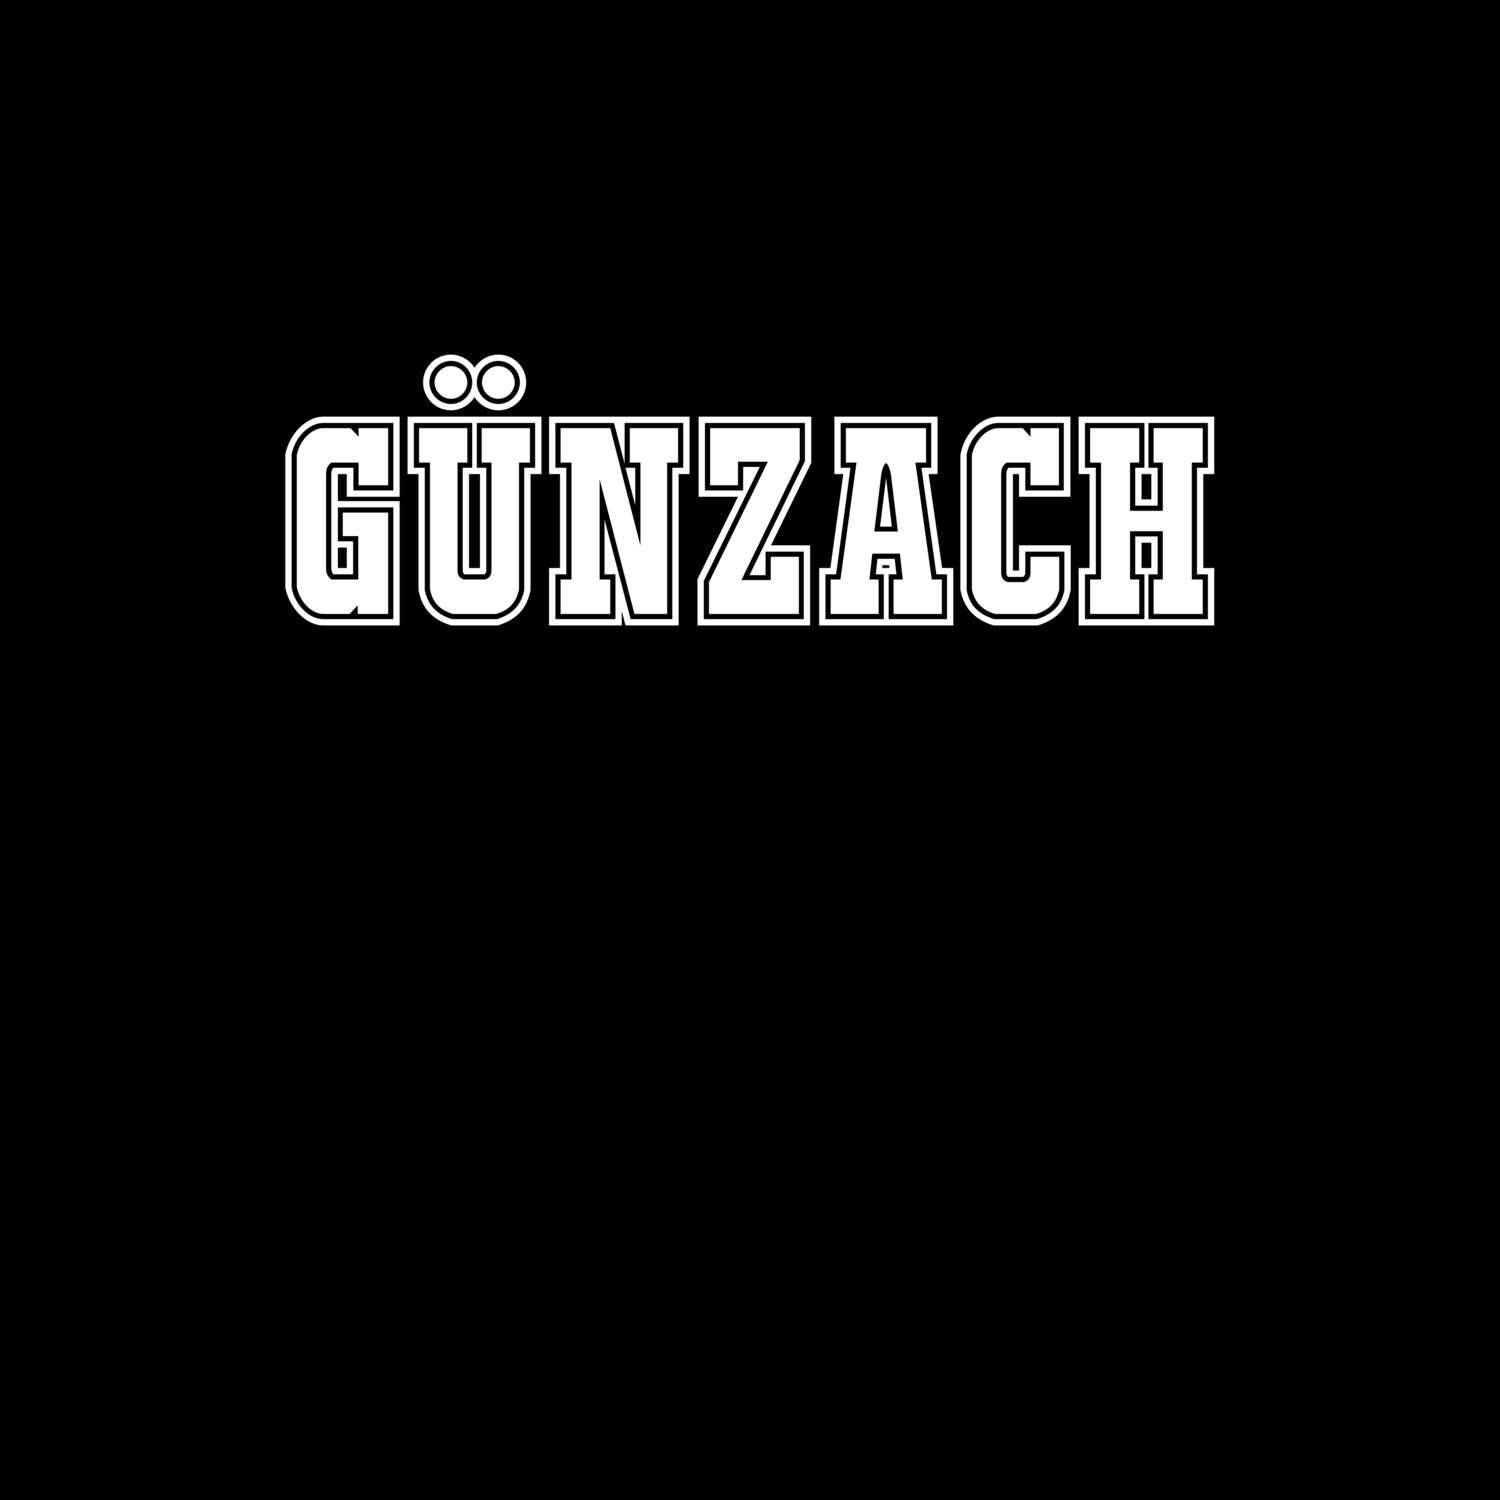 Günzach T-Shirt »Classic«